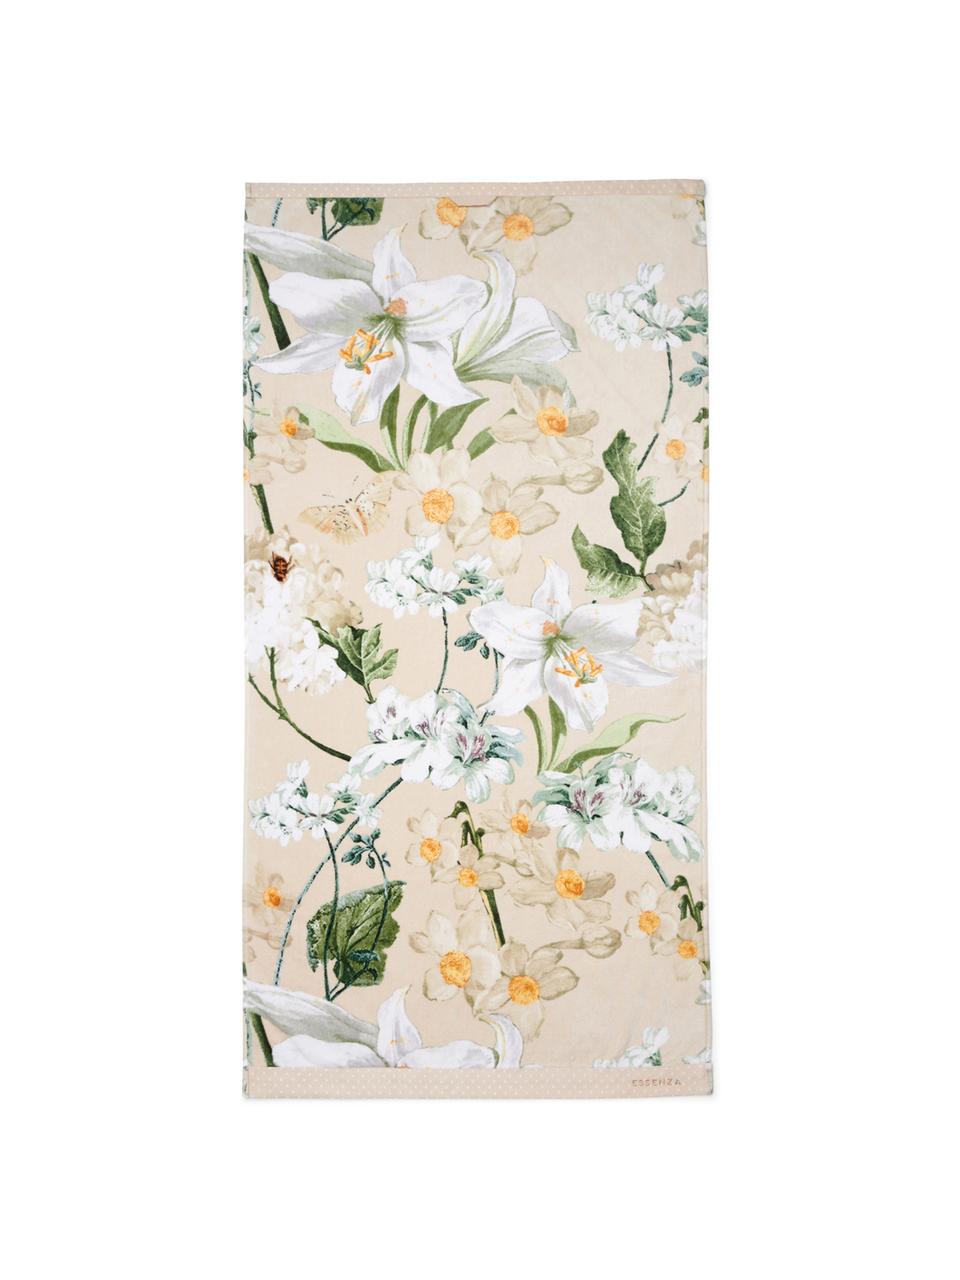 Handtuch Rosalee in verschiedenen Größen, mit Blumen-Muster, 100% Bio-Baumwolle, GOTS-zertifiziert, Beige, gemustert, Duschtuch, B 70 x L 140 cm